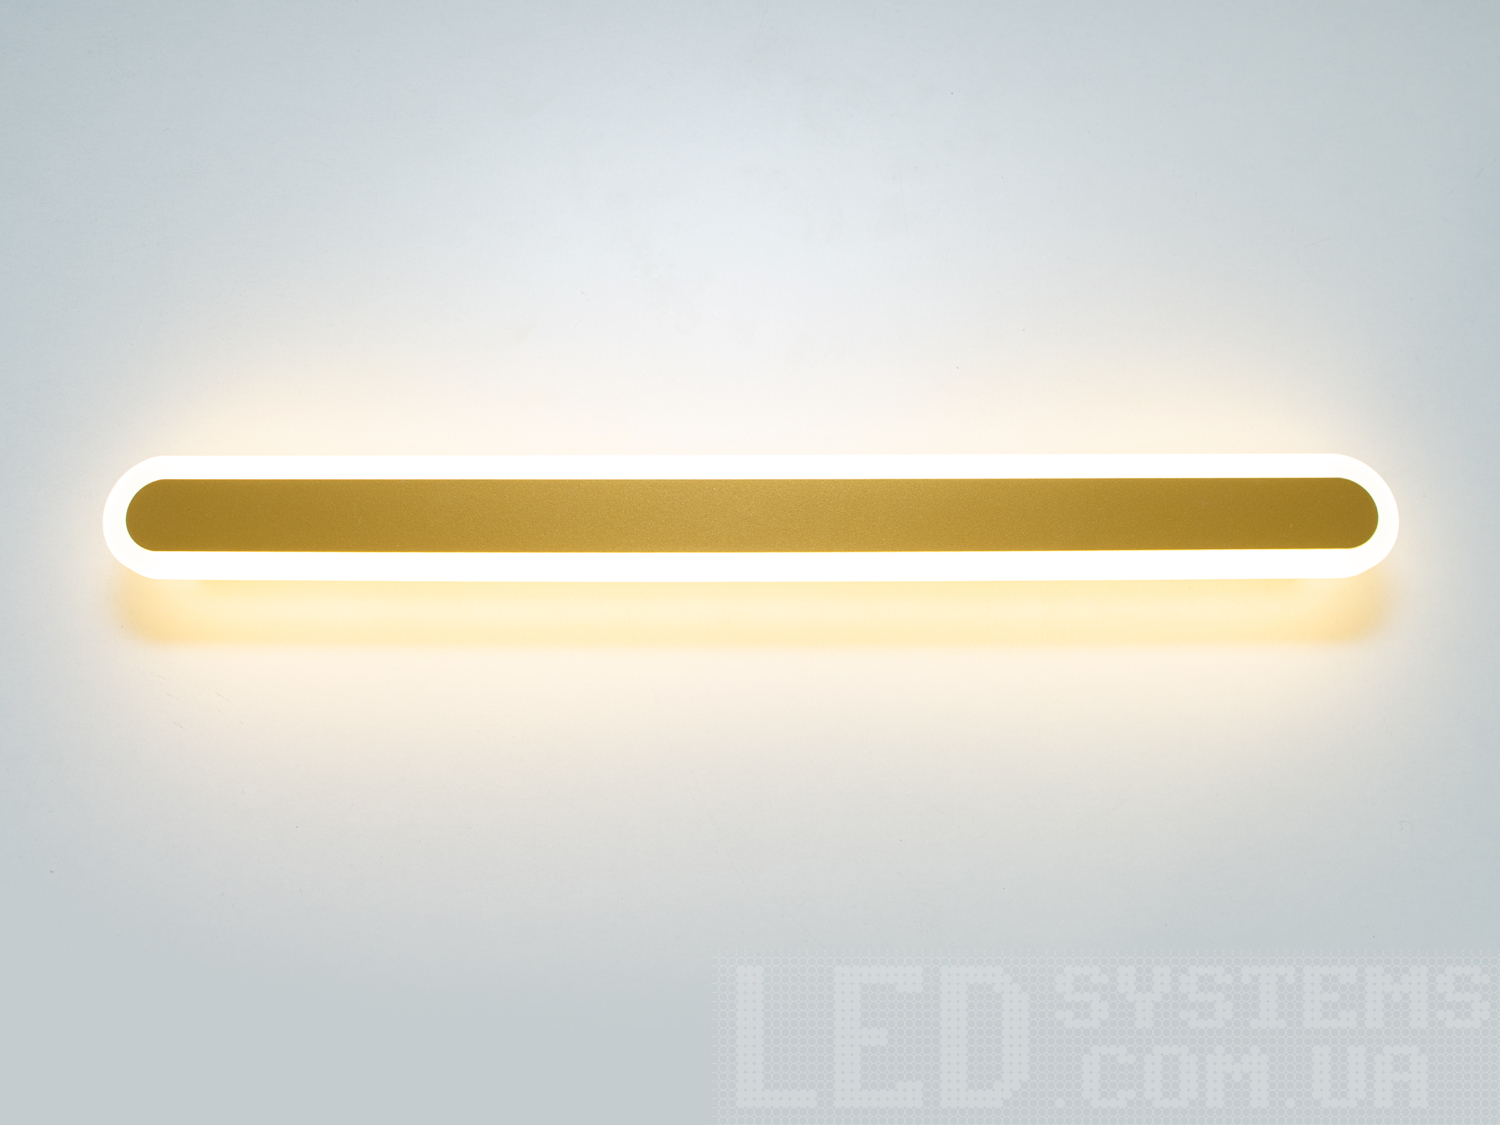 Світлодіодний світильник з лінійним підсвічуванням з незвичайним виконанням плафонів, що обрамляють LED лампи. LED світильник є ідеальним рішенням для акцентного (елементного) підсвічування в інтер'єрі - підсвічування дзеркал, картин, стінних ніш, особливих деталей інтер'єру і є не просто утилітарним світильником як звичайне лінійне підсвічування. Світильник має унікальні світлодіодні енергозберігаючі лампи. Які за дуже низької споживаної потужності створюють потужний світловий потік. Витончені накладні світлодіодні світильники призначені для створення яскравого світлодіодного освітлення з регульованою температурою кольору від теплого білого до холодного білого. Перемикання спектрів світіння світлодіодного світильника здійснюється простим вимкненням-вмиканням. Кріпиться до будь-яких видів поверхонь універсальним кріпленням-на планку.